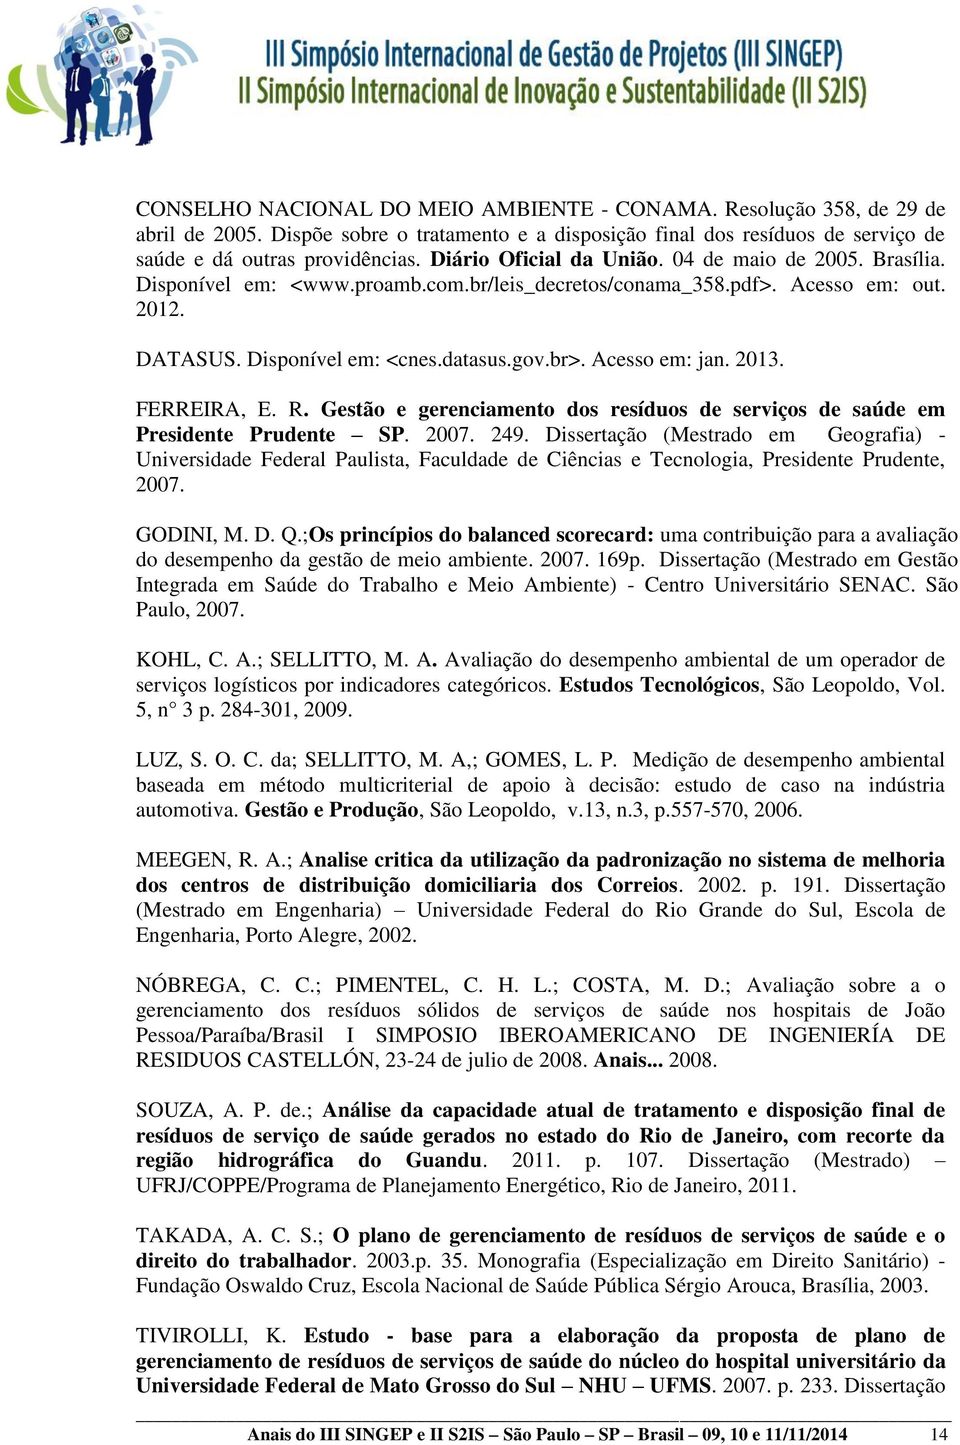 Acesso em: jan. 2013. FERREIRA, E. R. Gestão e gerenciamento dos resíduos de serviços de saúde em Presidente Prudente SP. 2007. 249.